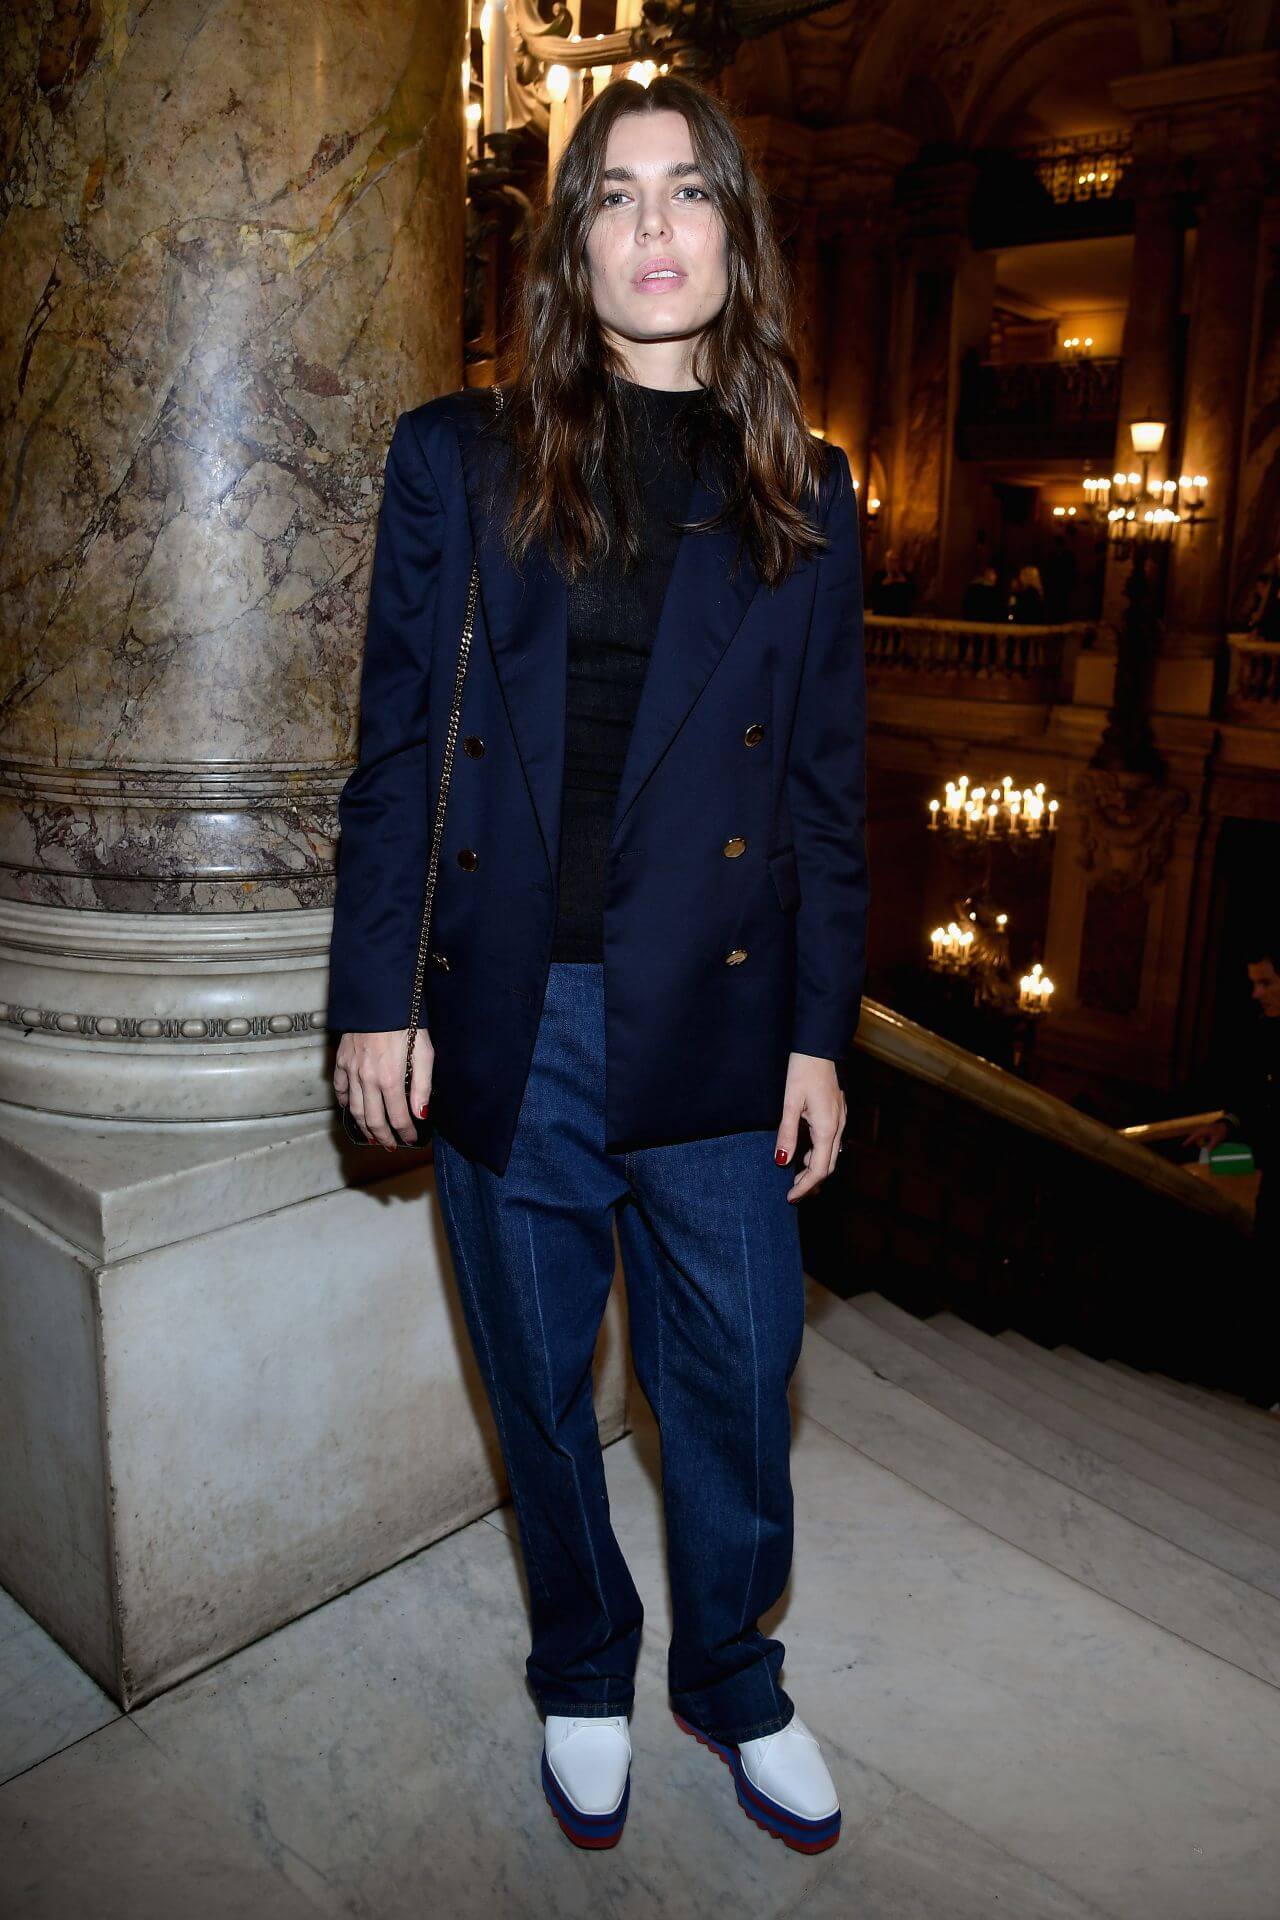 Charlotte Casiraghi In Blue Blazer Under Black Top with Denim Bottoms At Stella McCartney Fashion Show, PFW in Paris